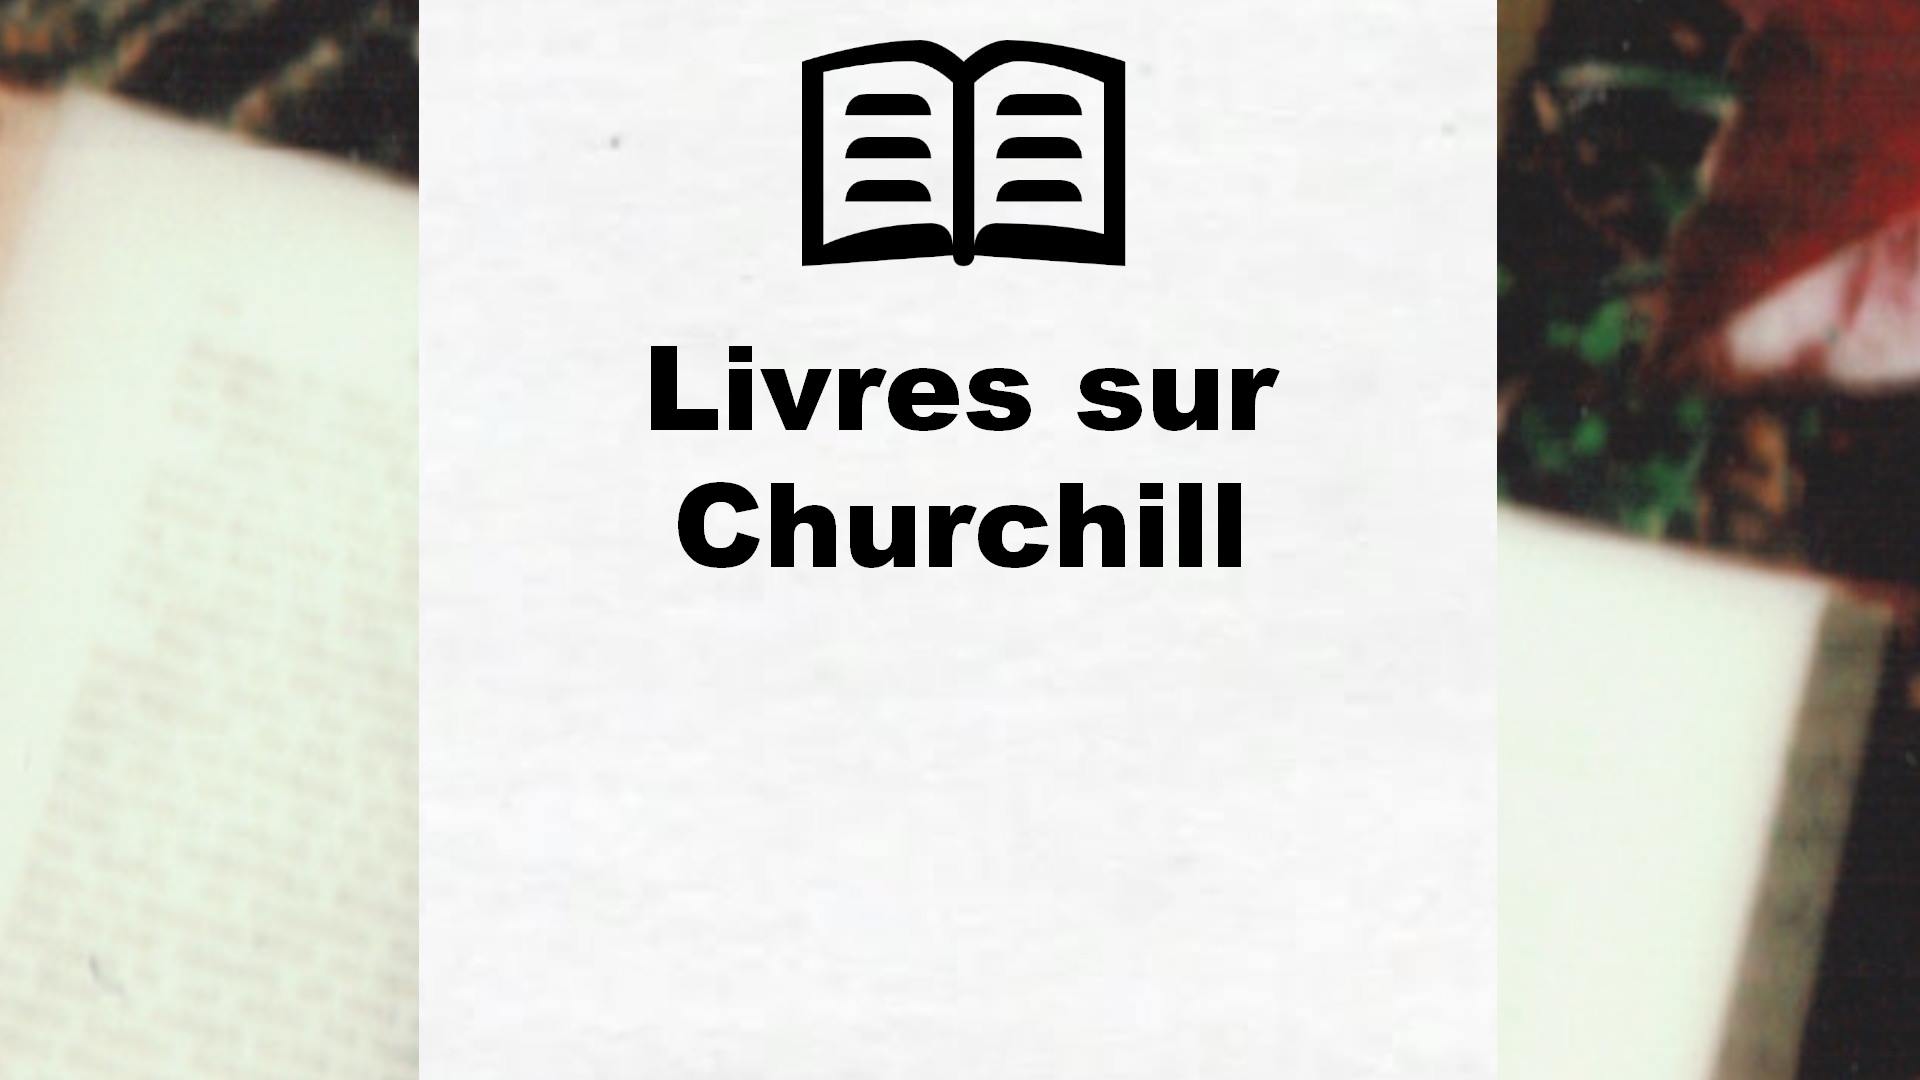 Livres sur Churchill